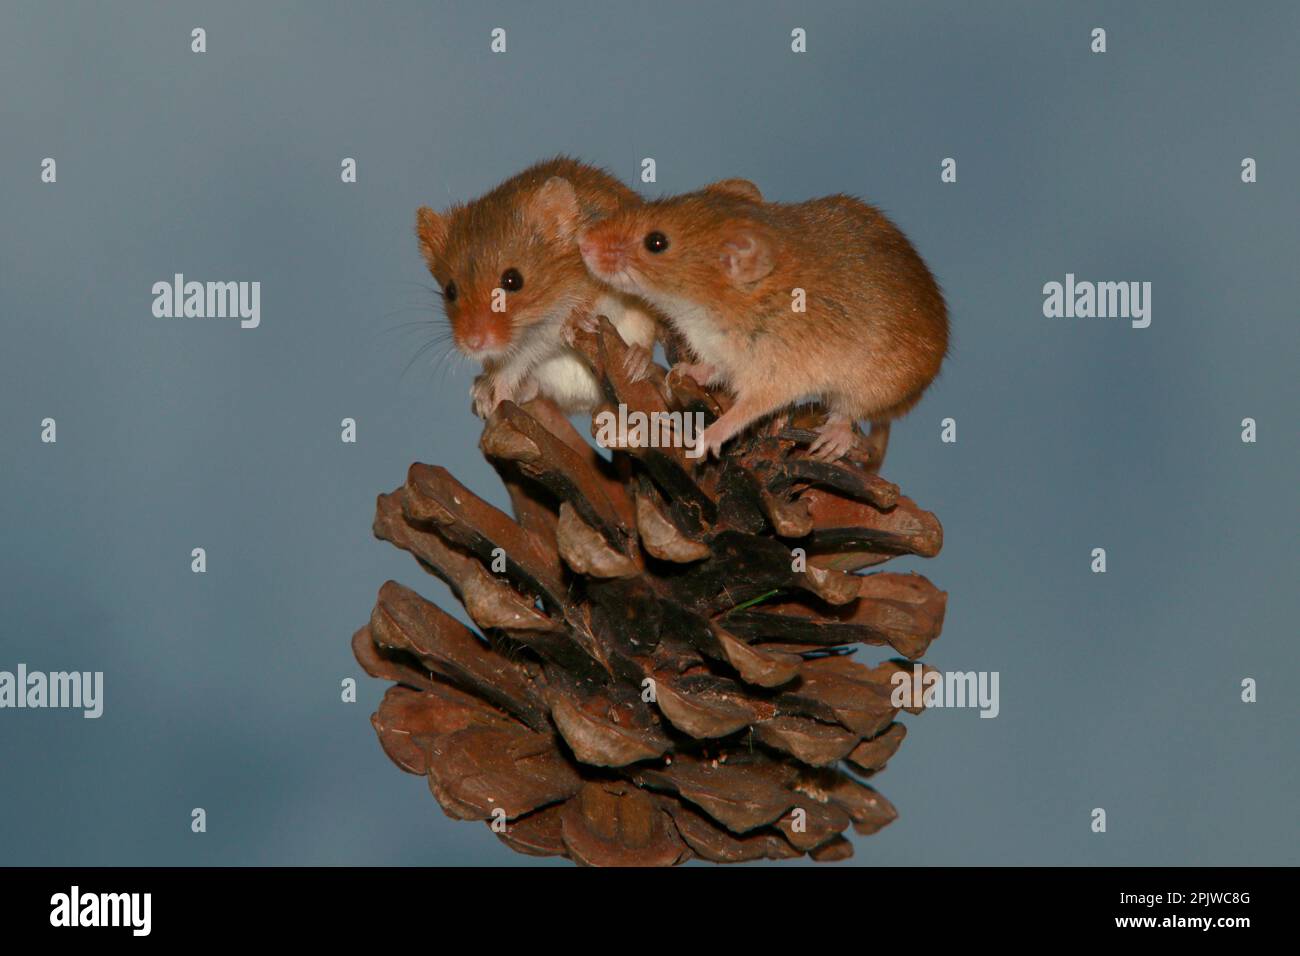 Harvest mice on acorn Stock Photo